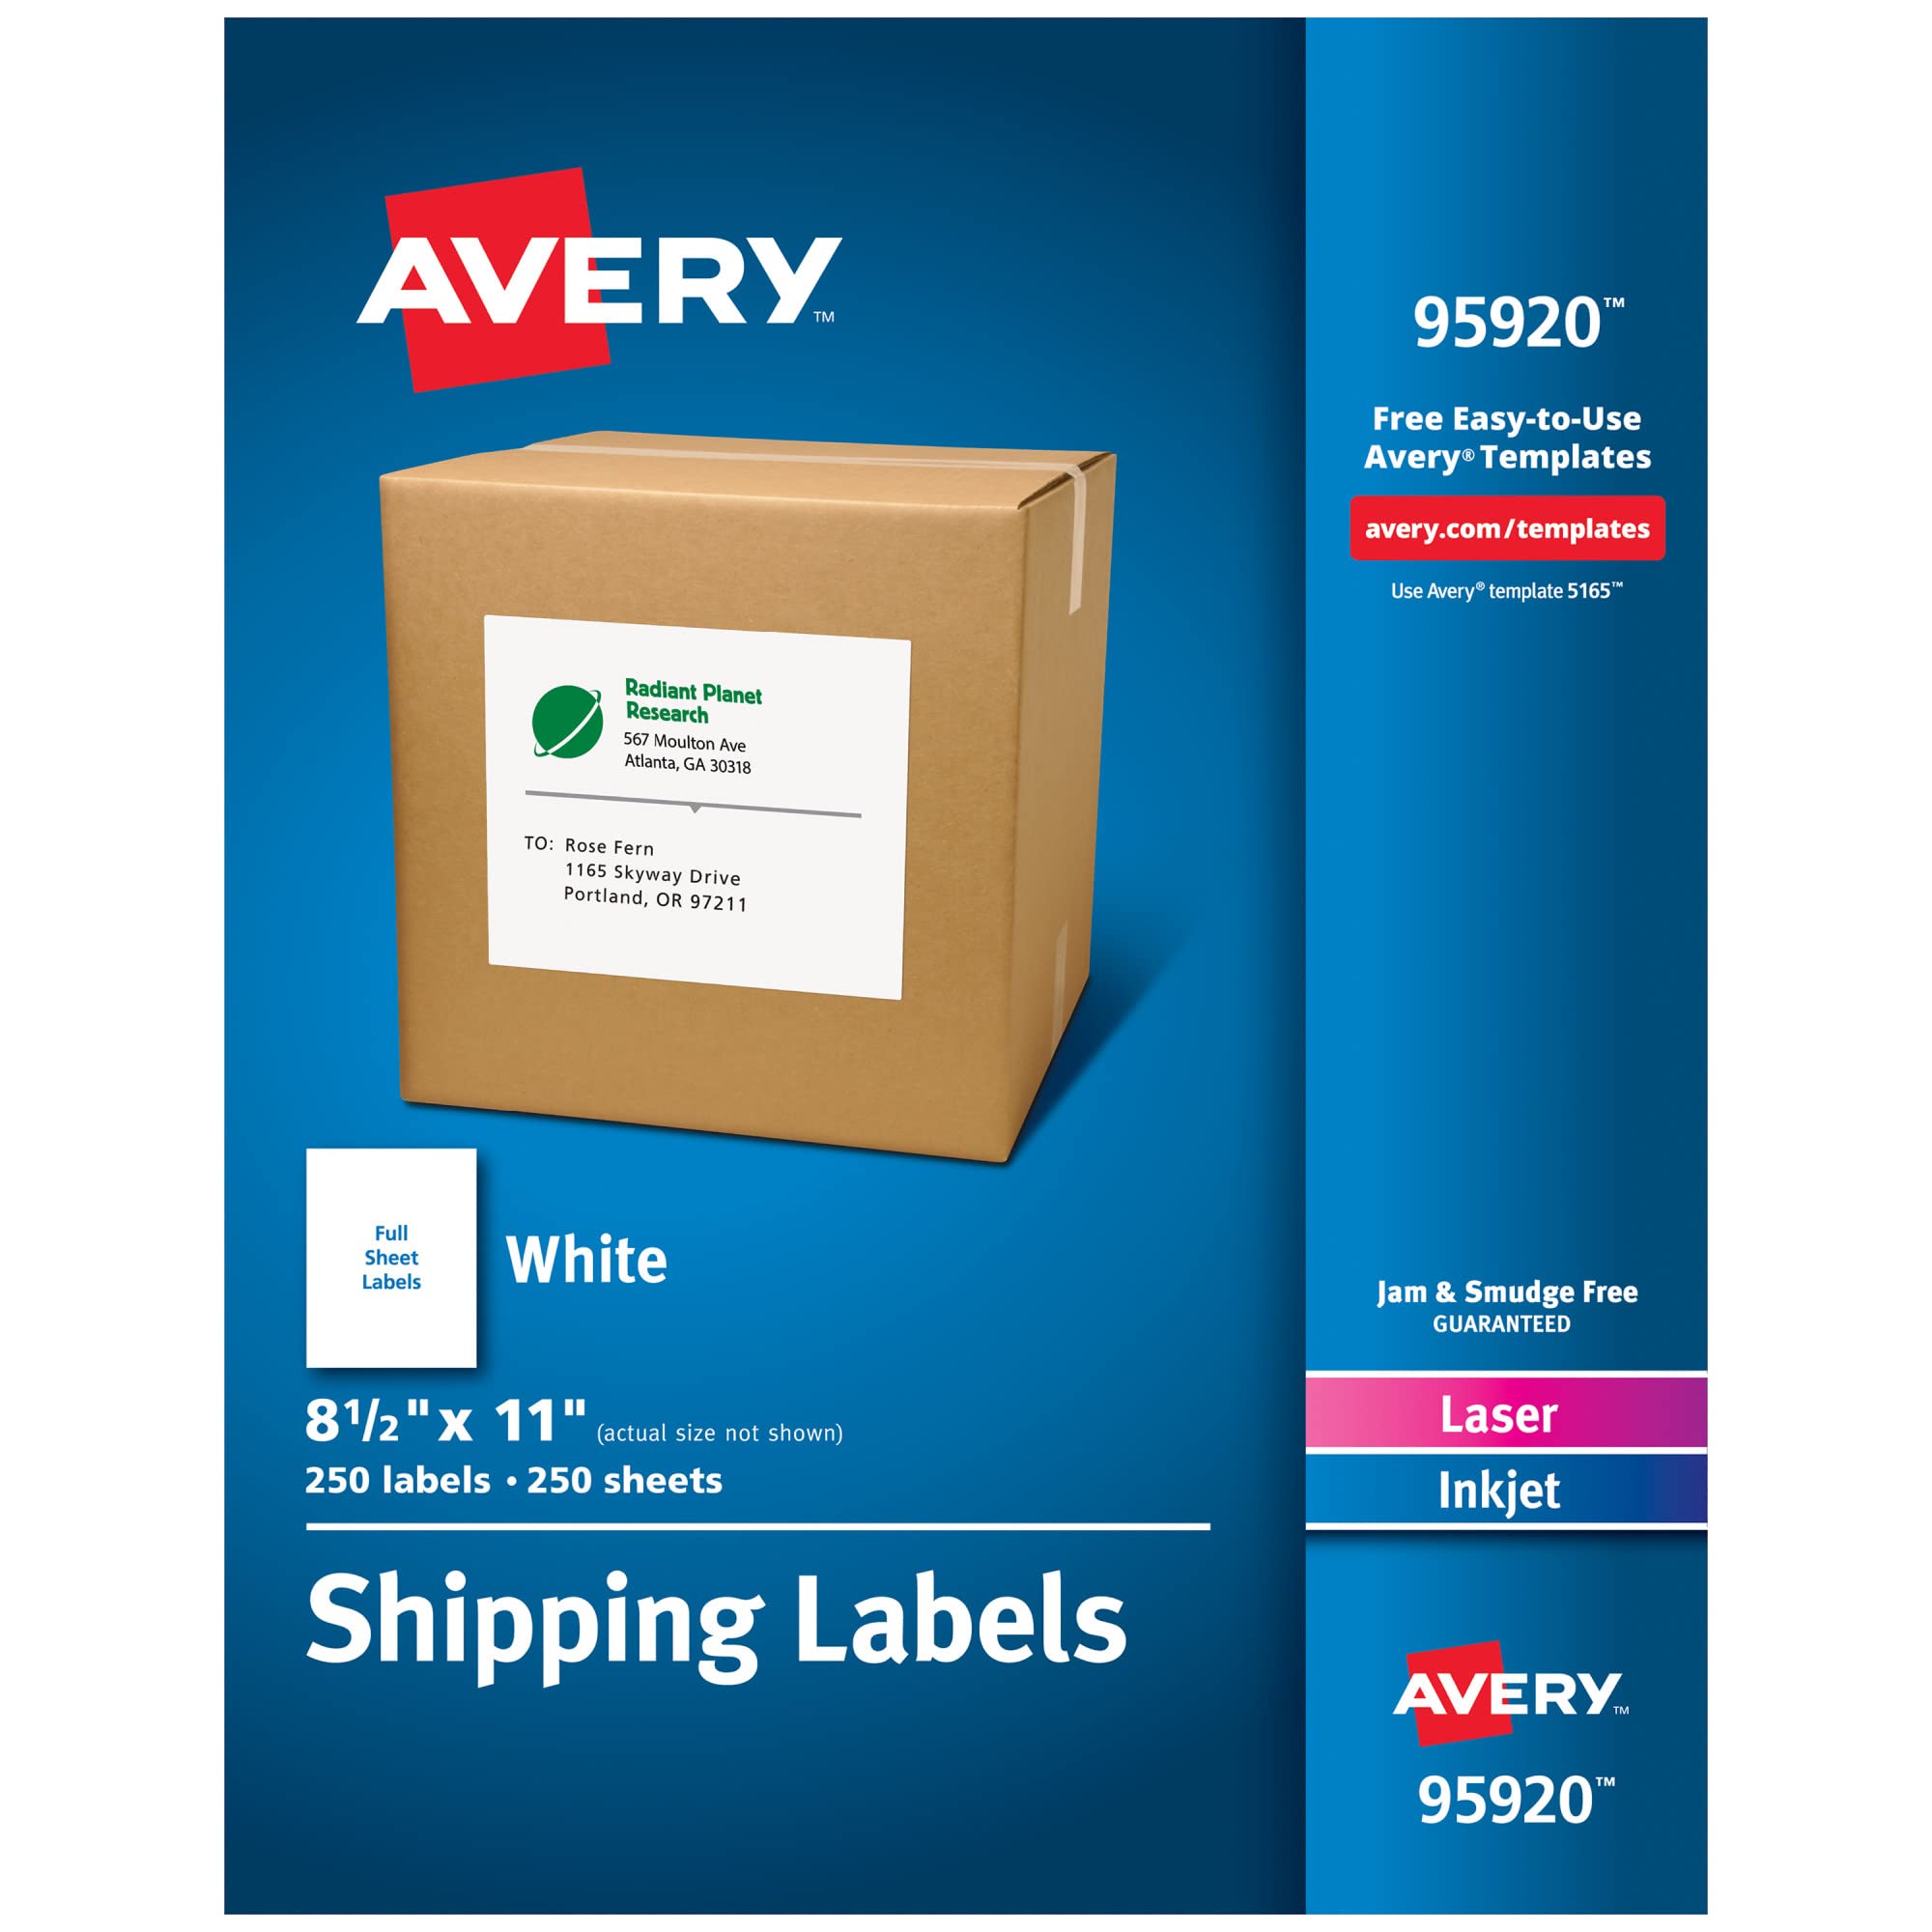 Avery 送货地址标签，激光和喷墨打印机，250 个标签，整张标签，永久，2 包 (95920)